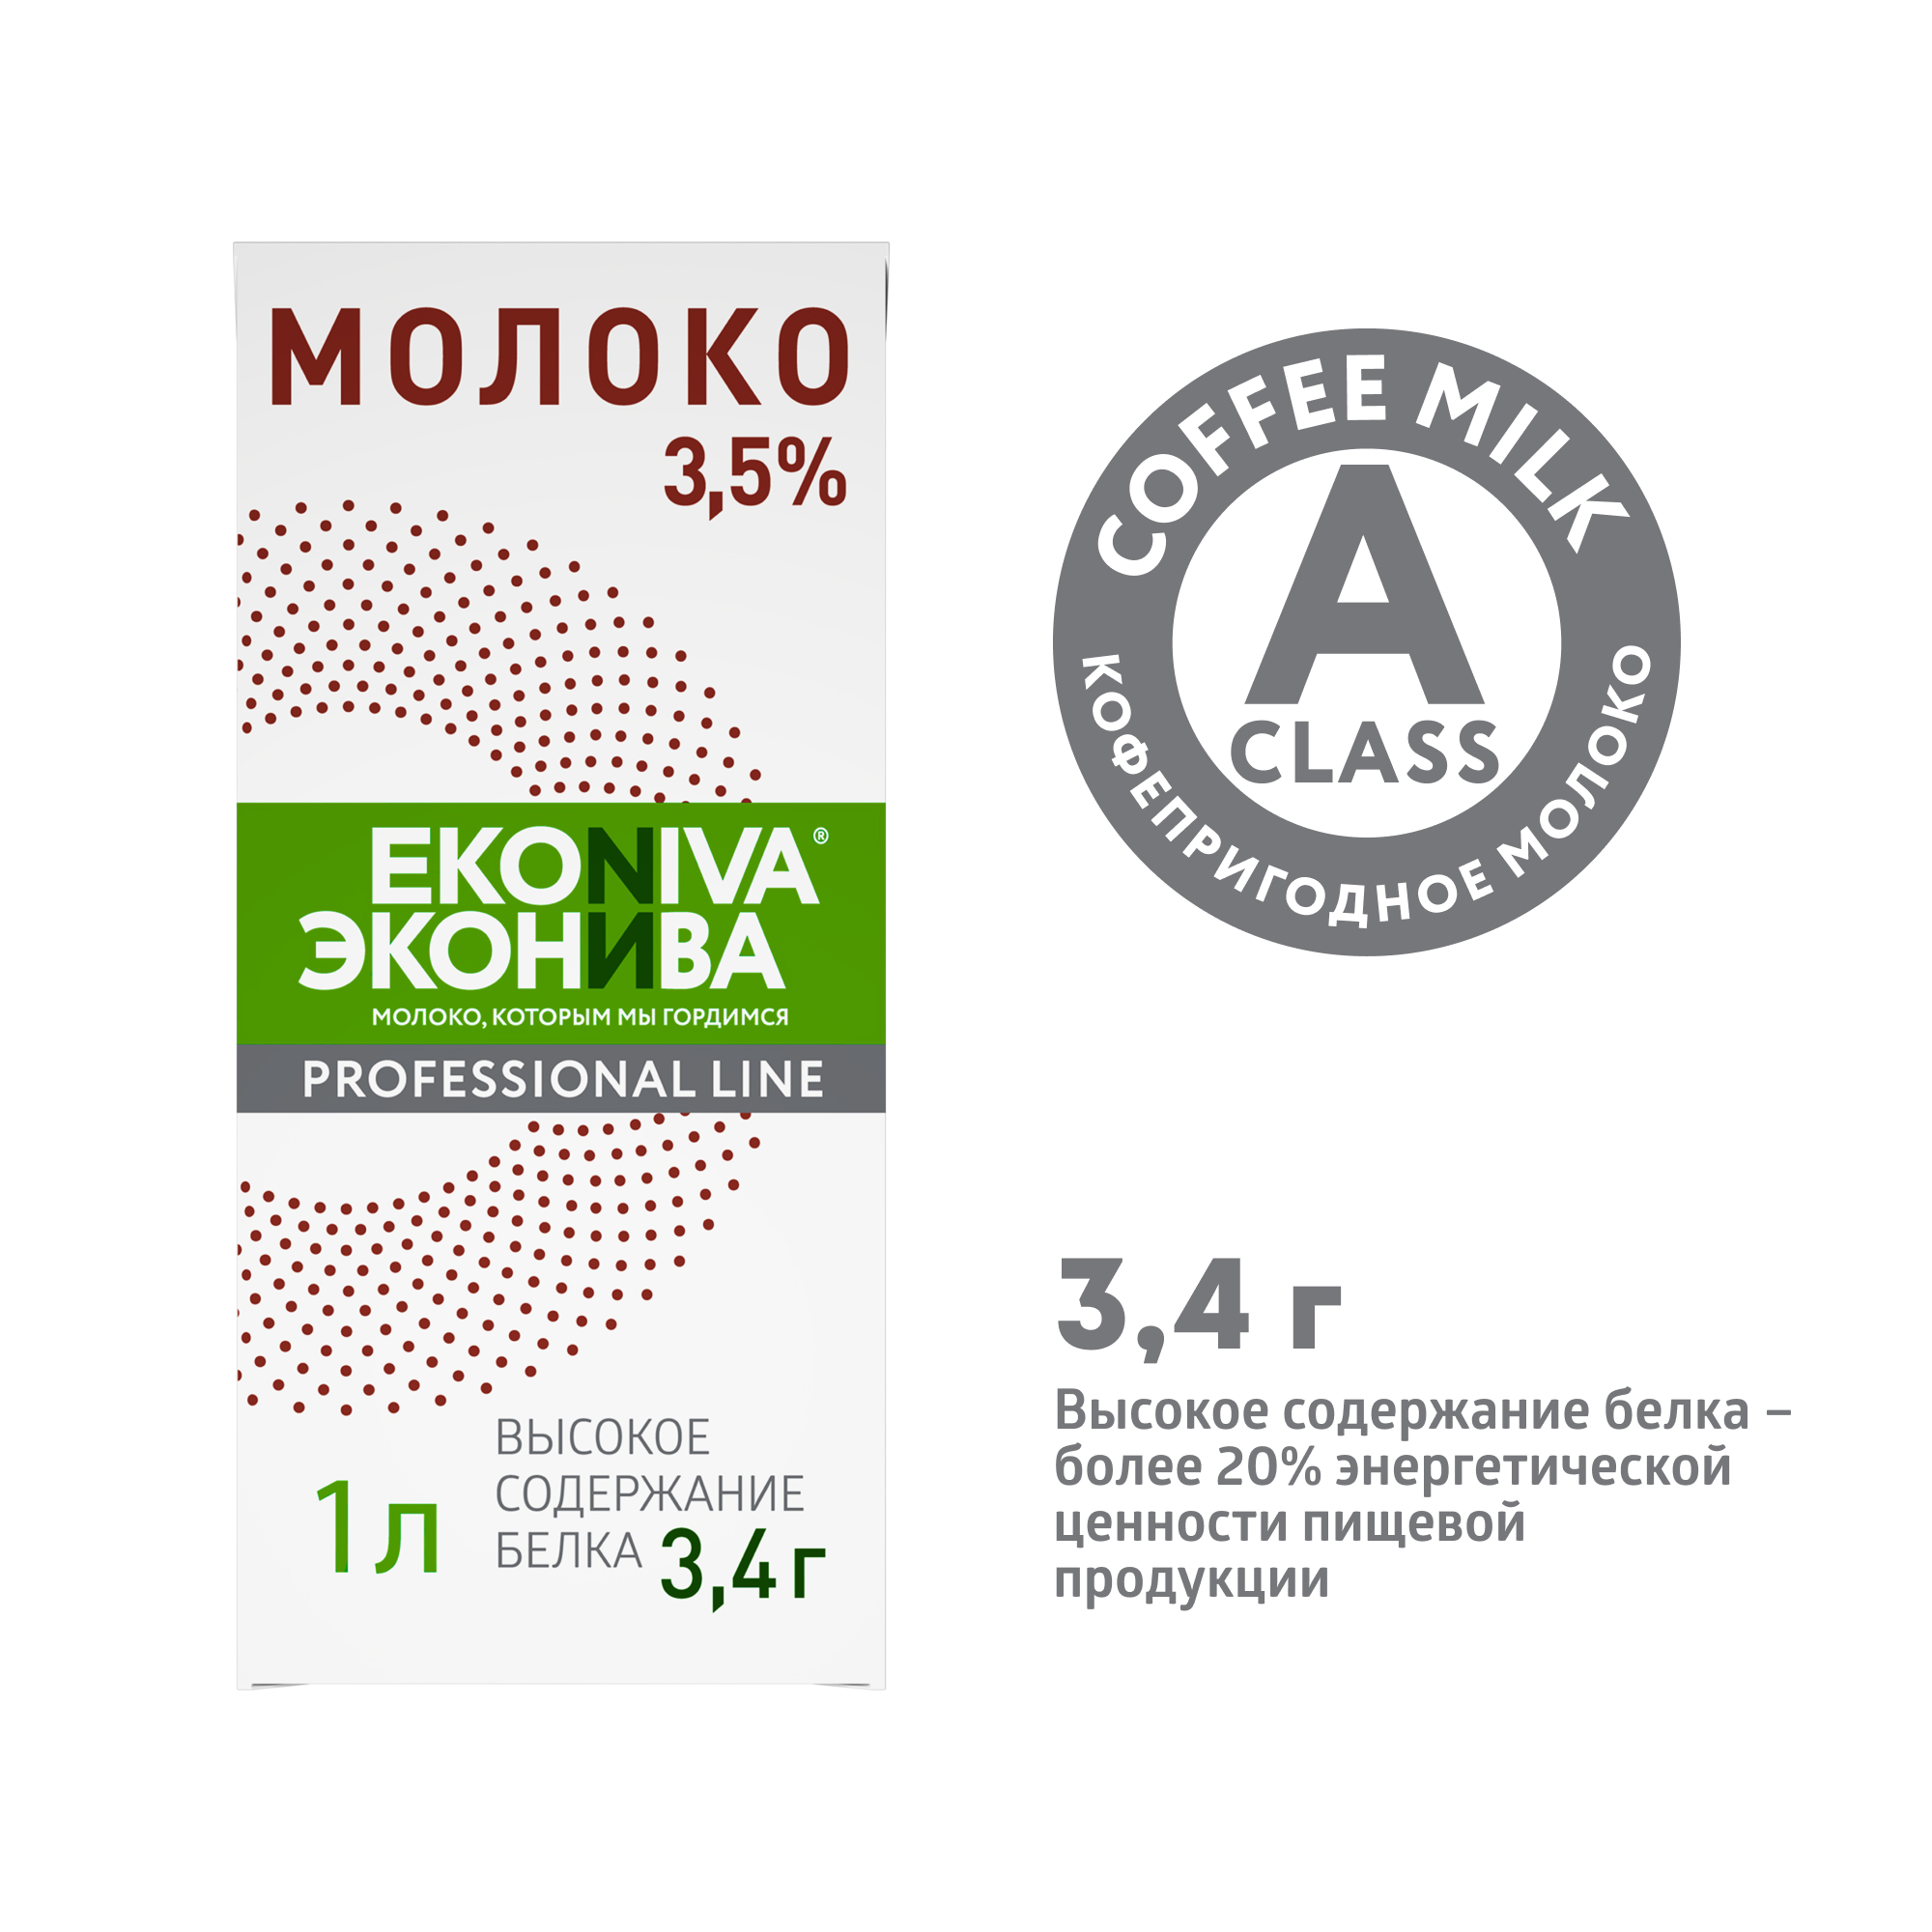 Молоко 3,5% ультрапастеризованное 1 л ЭкоНива Professional line - купить в Мегамаркет Москва Пушкино, цена на Мегамаркет